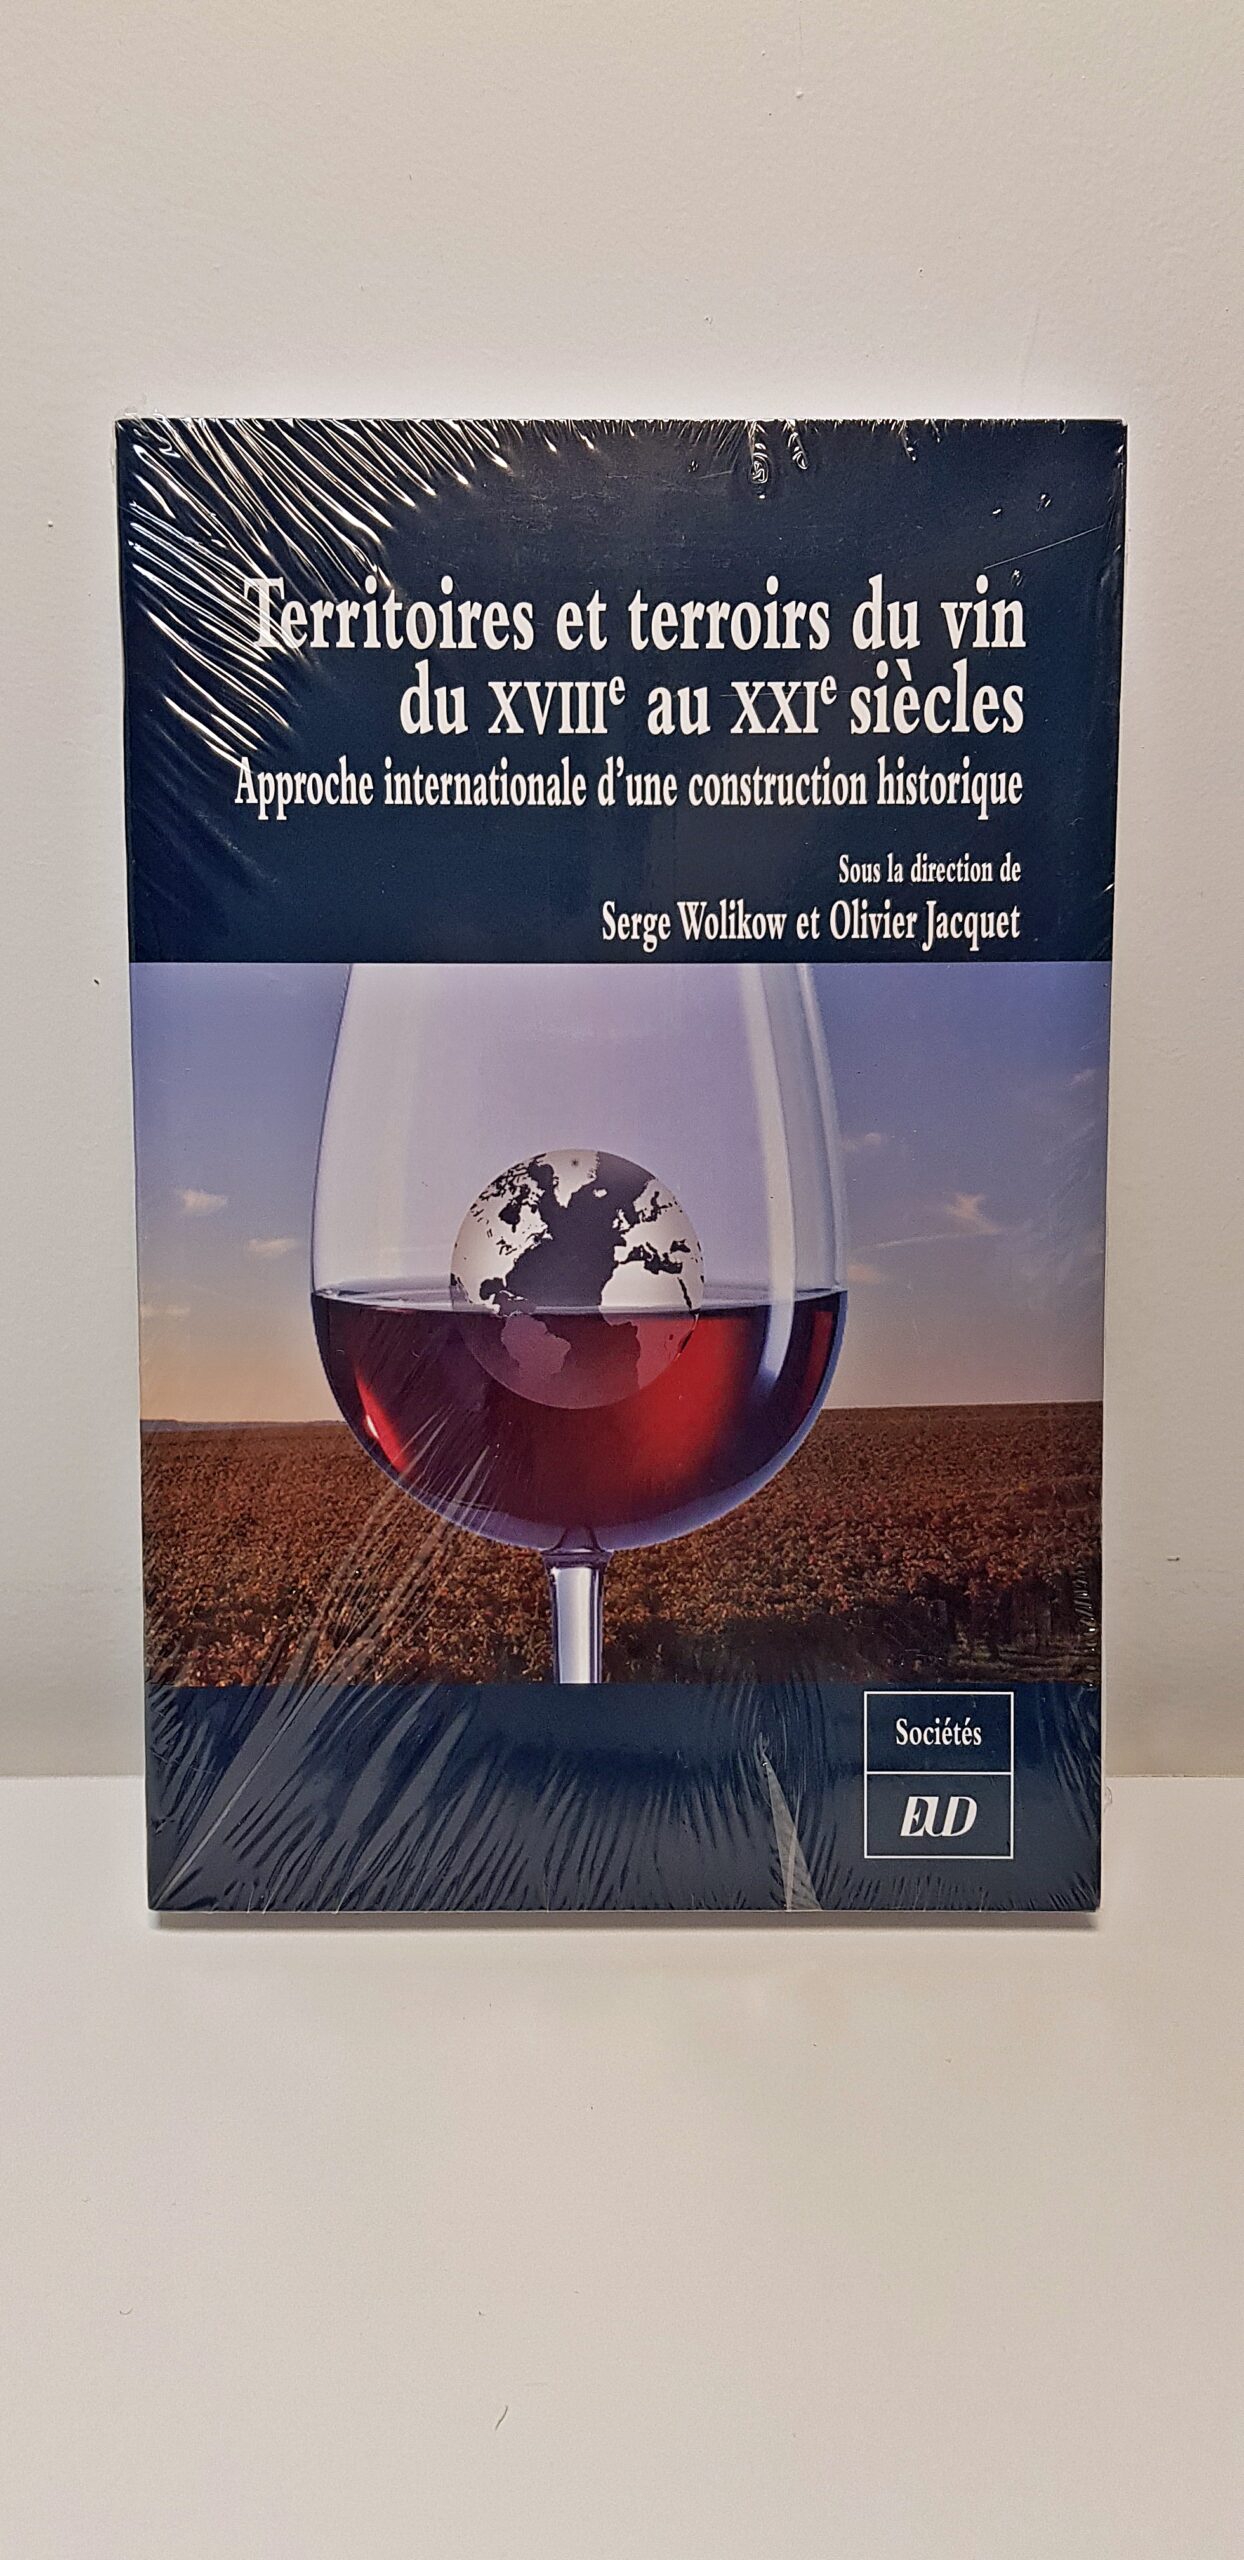 Livre “Territoires et terroirs du vin  du XVIIIe au XXIe siècle” de Serge Wolikow et Olivier Jacquet